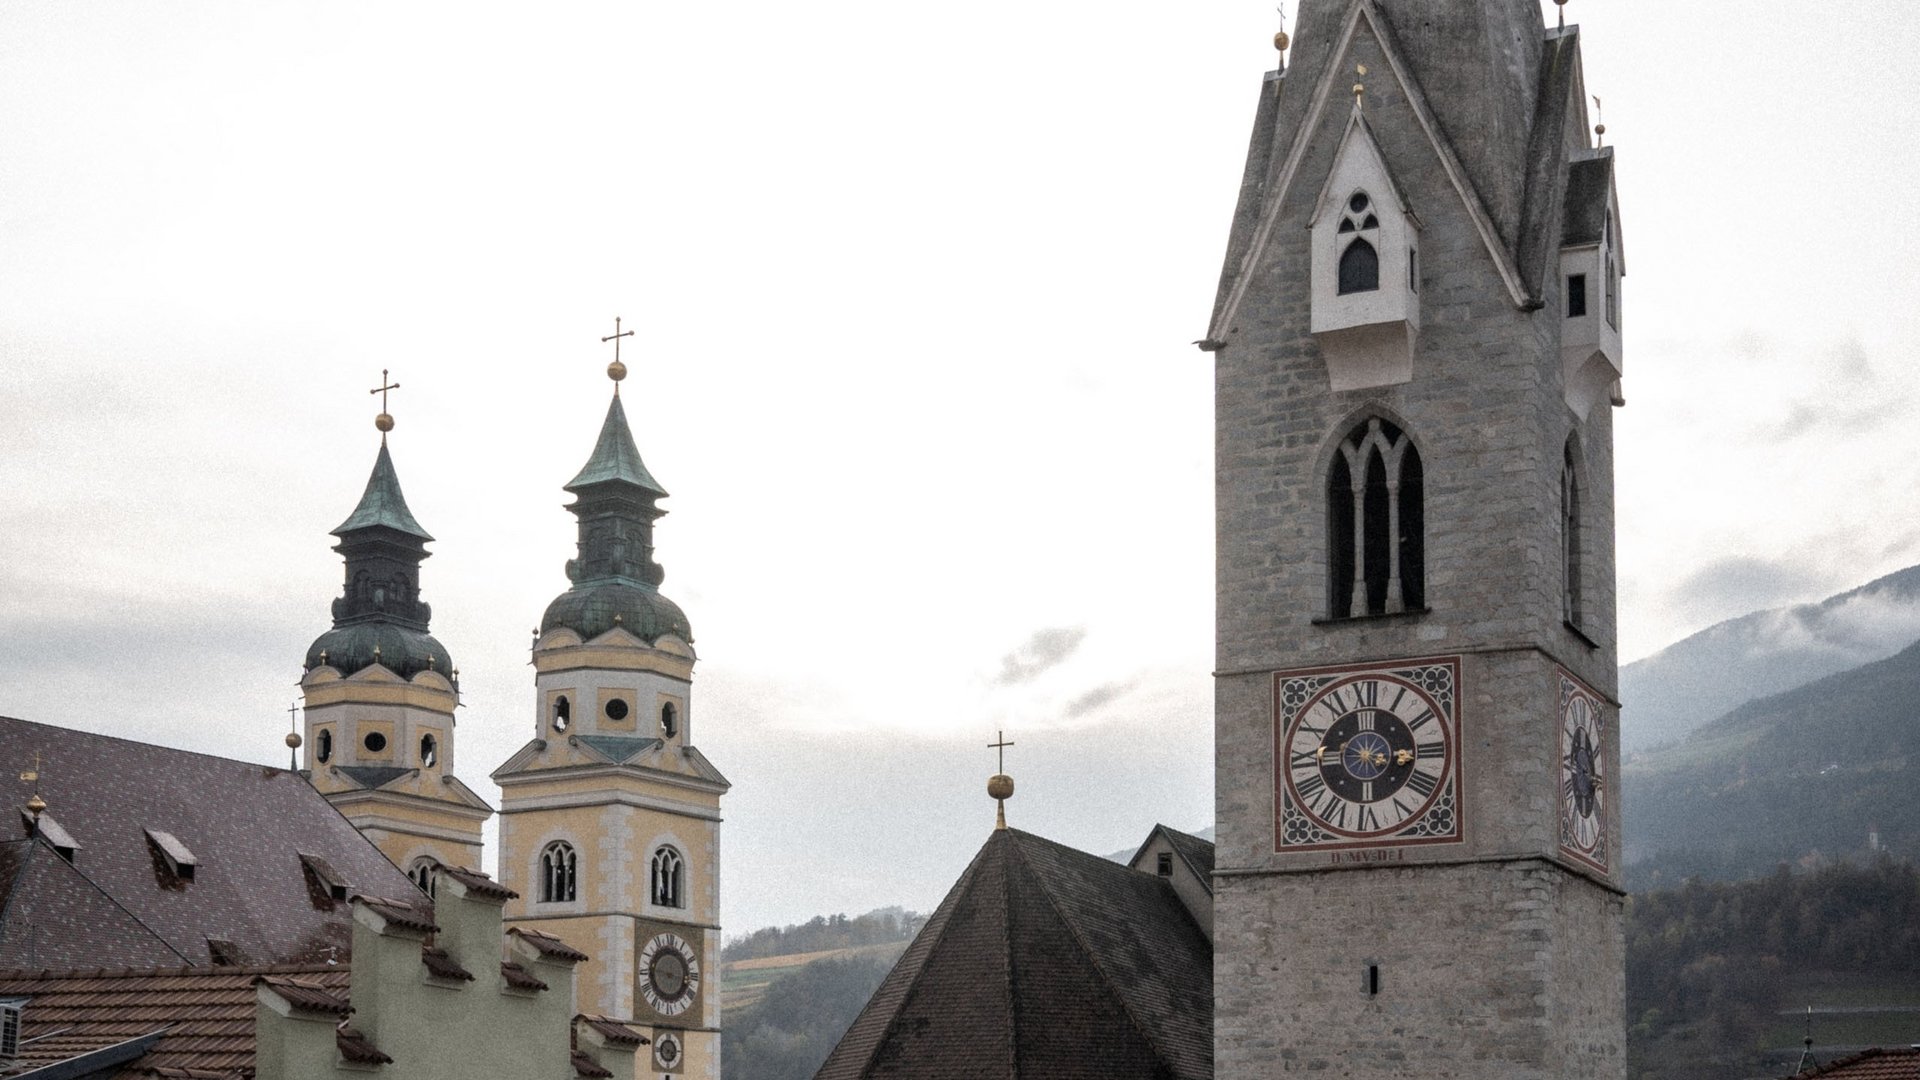 Verbringen Sie Ihren Urlaub in Brixen in Südtirol.